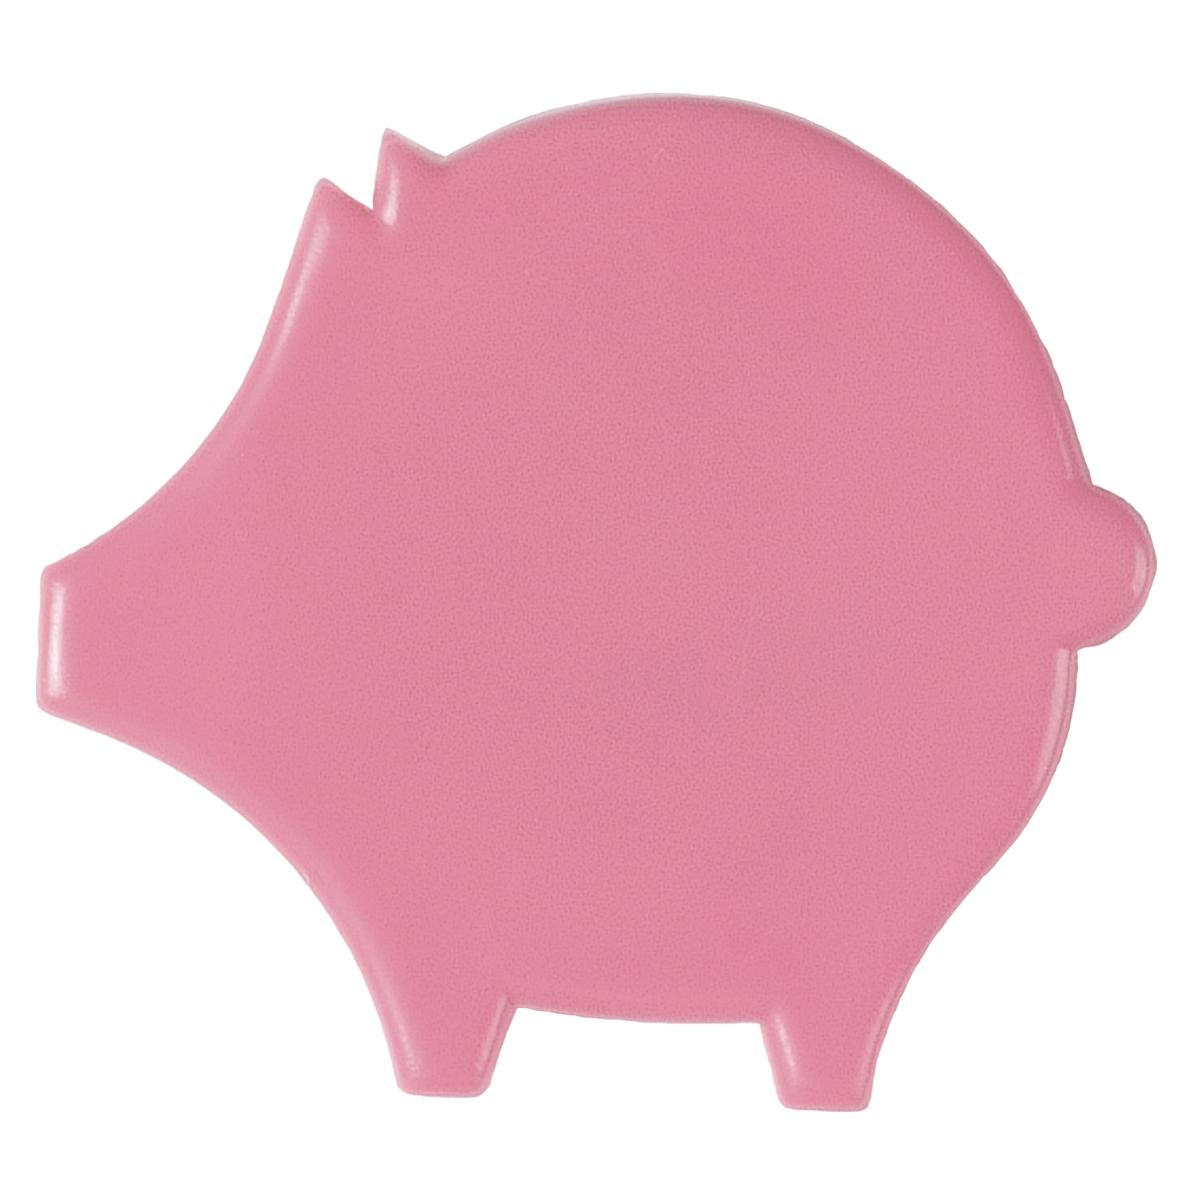 Personalisierter Magnet in Form eines Schweins - Bob